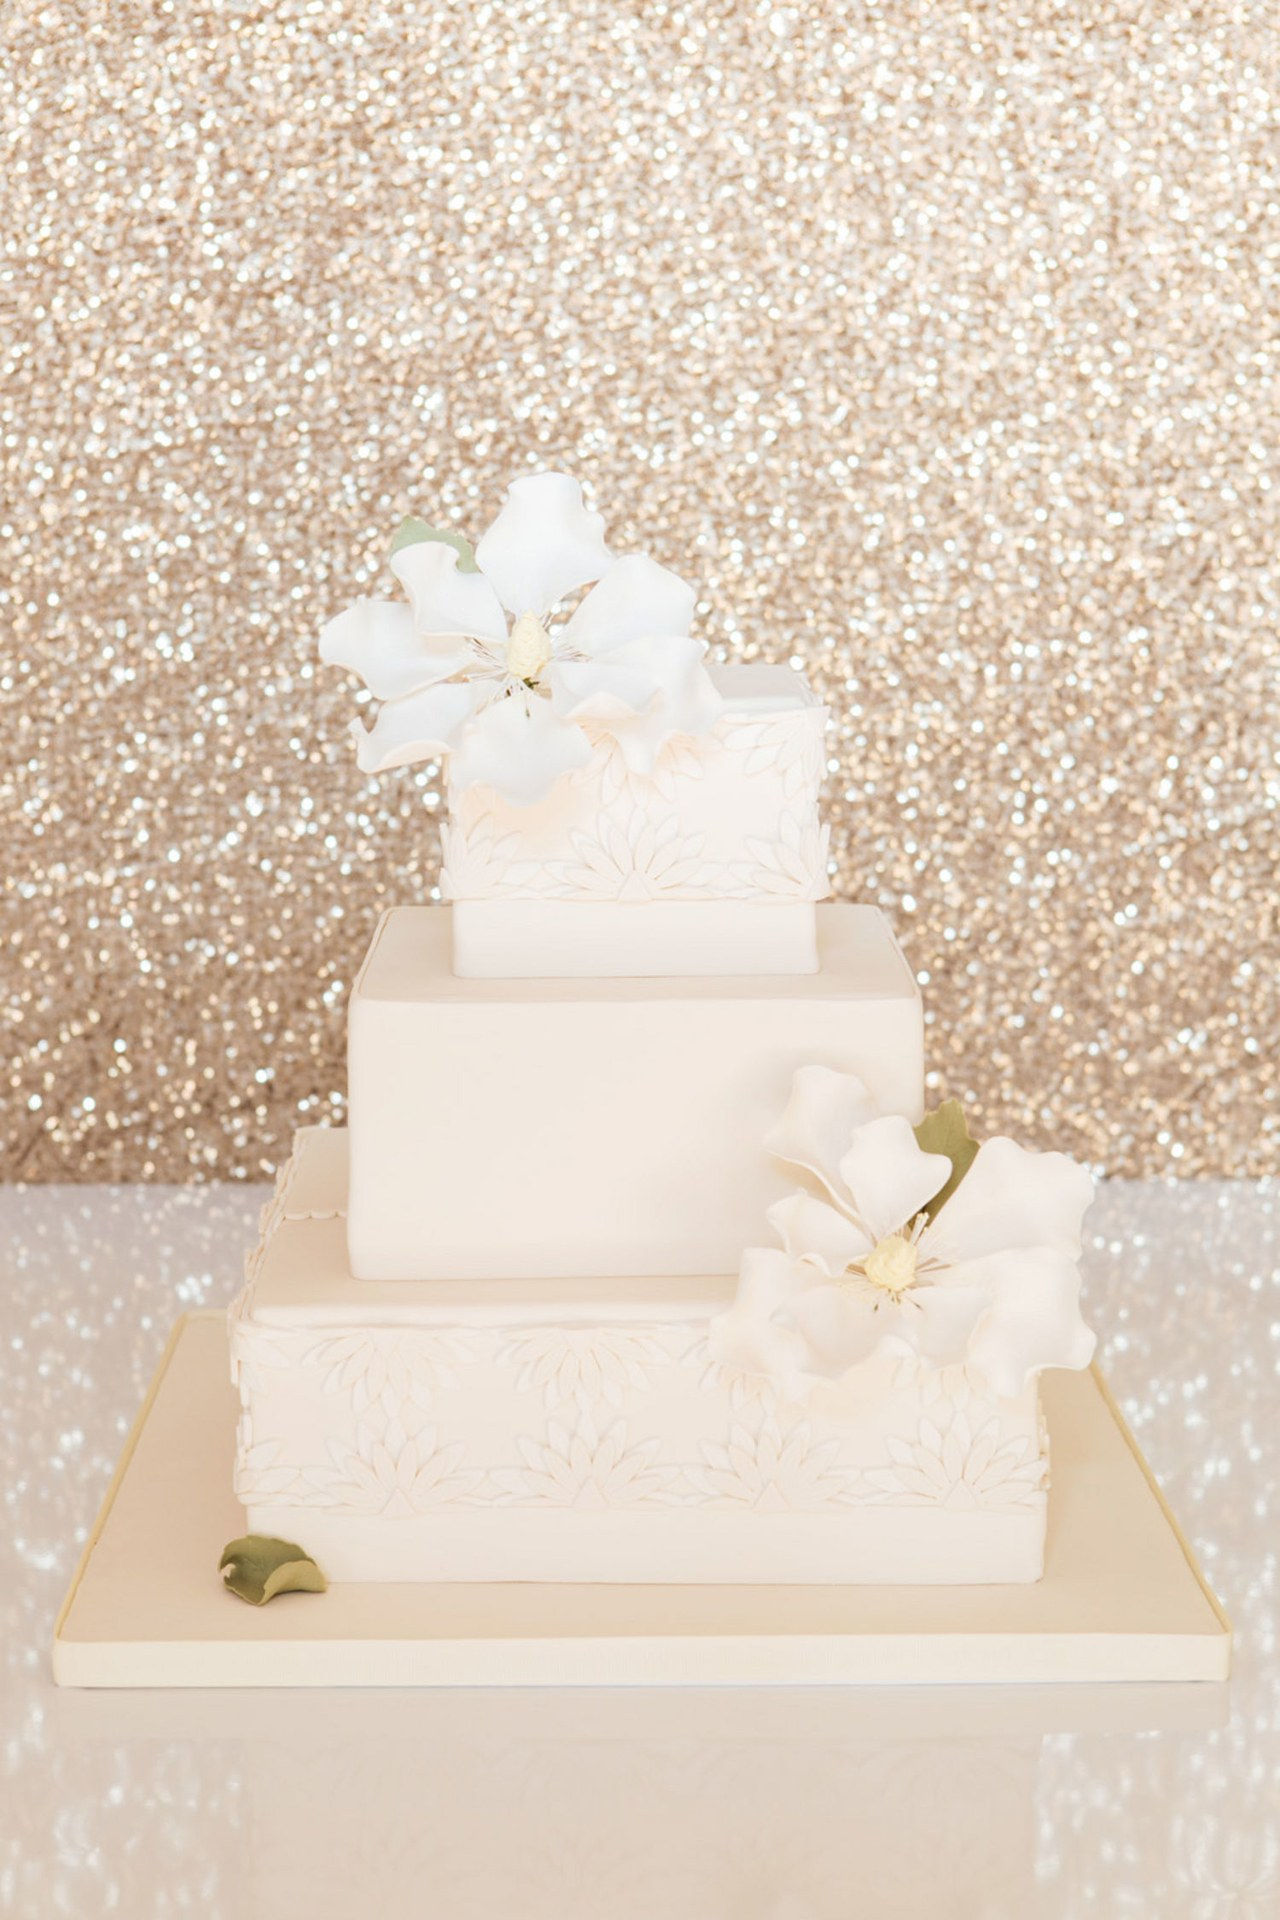 五 best nyc wedding cakes made in heaven cakes 0930